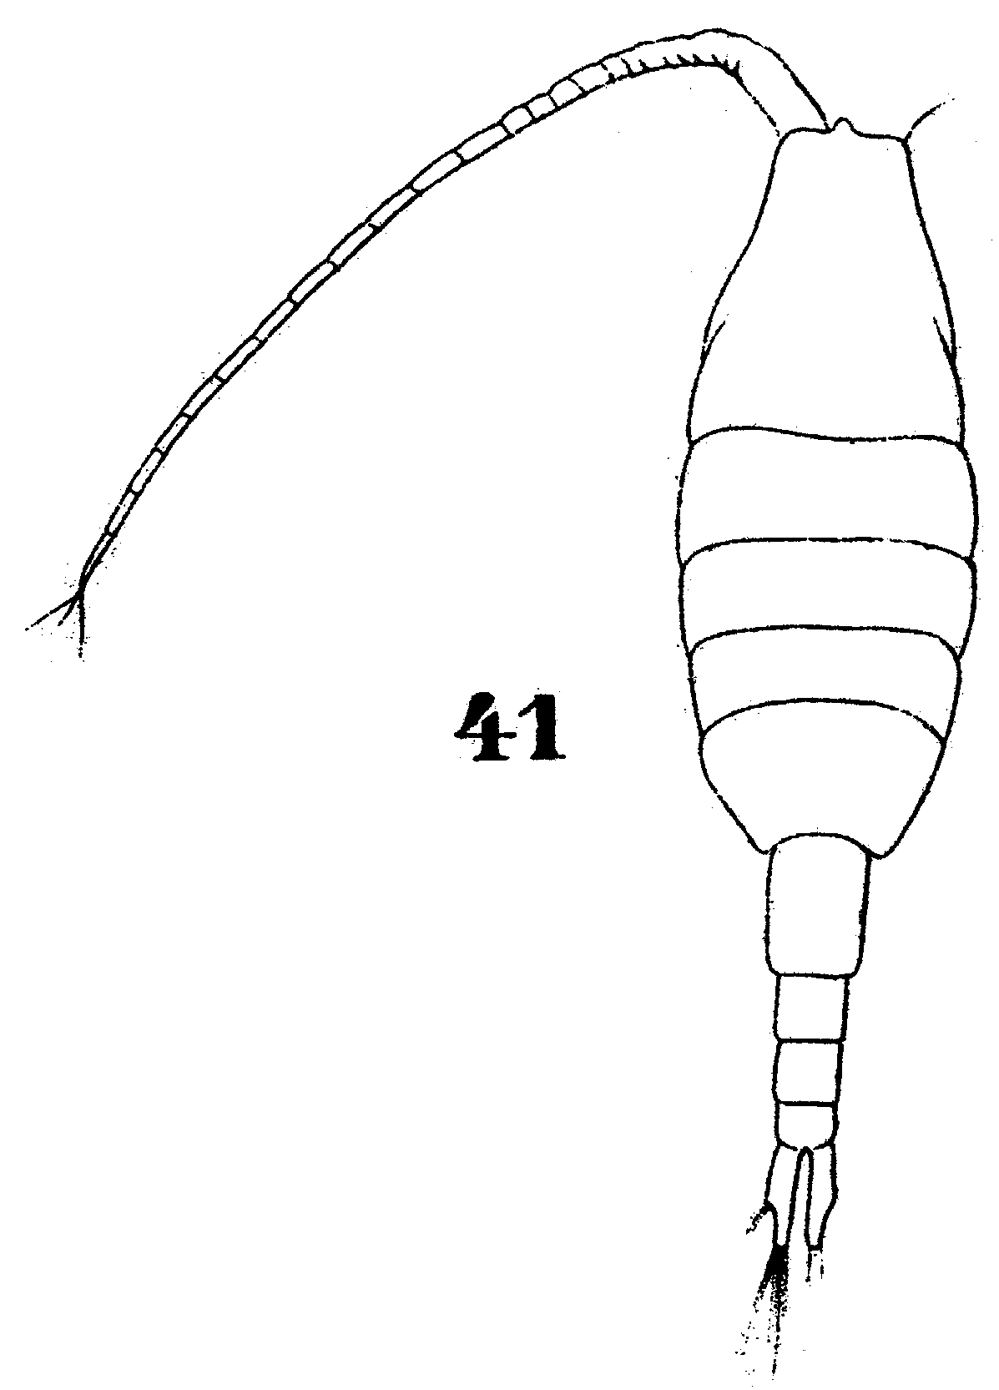 Espce Paraheterorhabdus (Paraheterorhabdus) vipera - Planche 8 de figures morphologiques